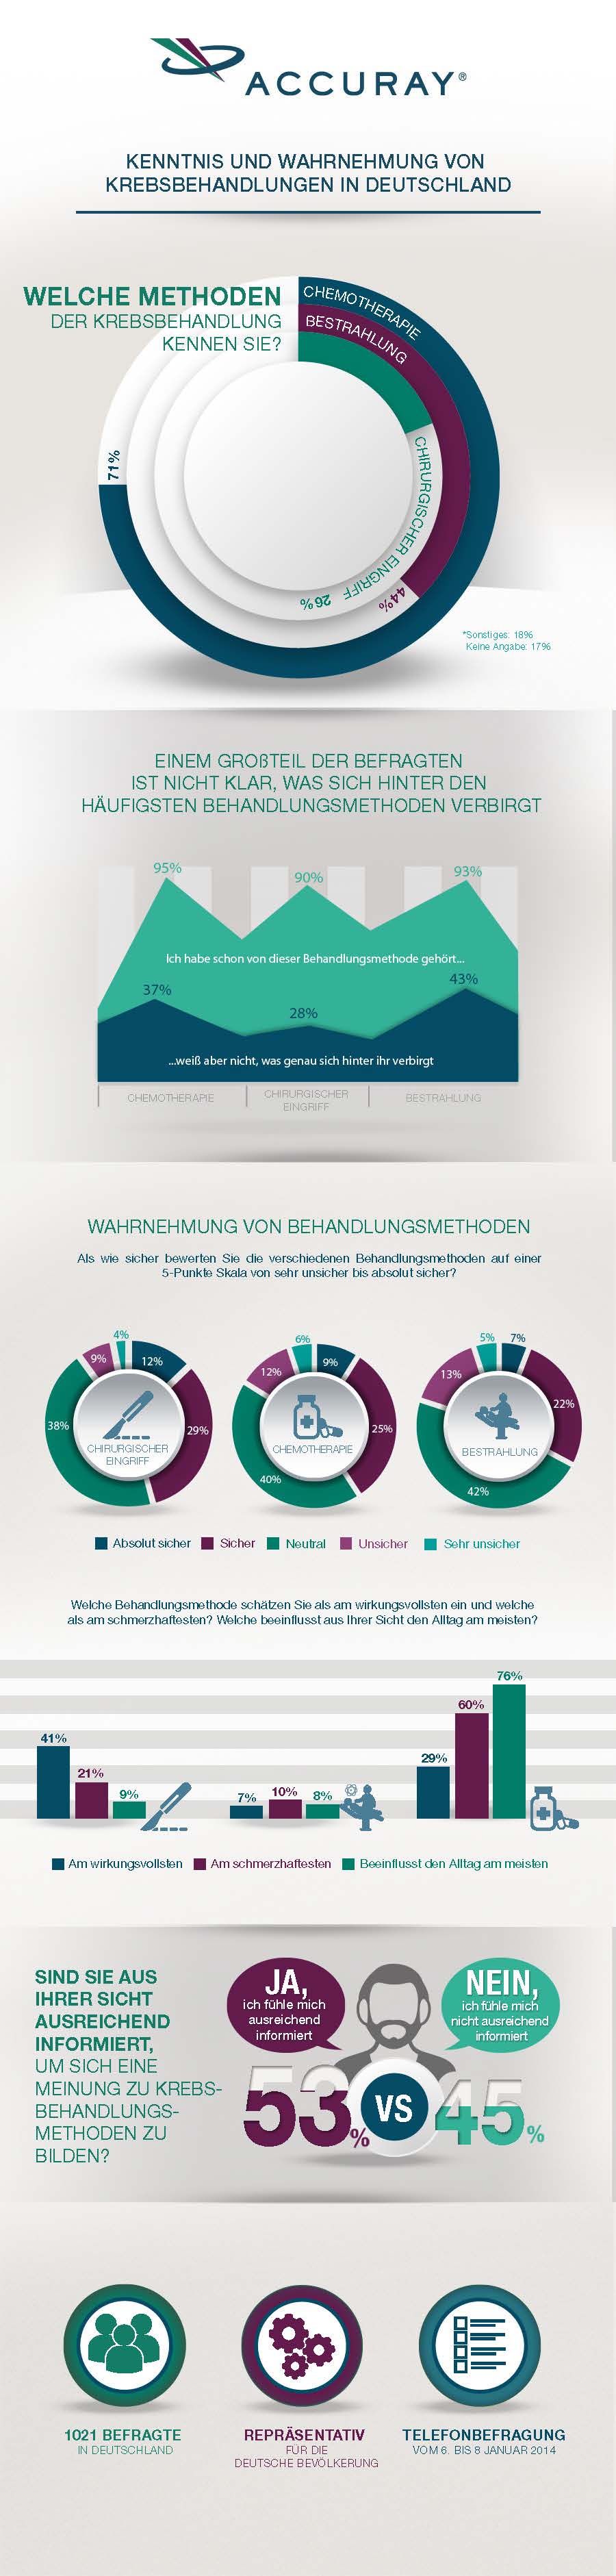 Infografik: Ergebnisse einer Umfrage über die Kenntnis und Wahrnehmung von Krebserkrankungen und –therapien in Deutschland.